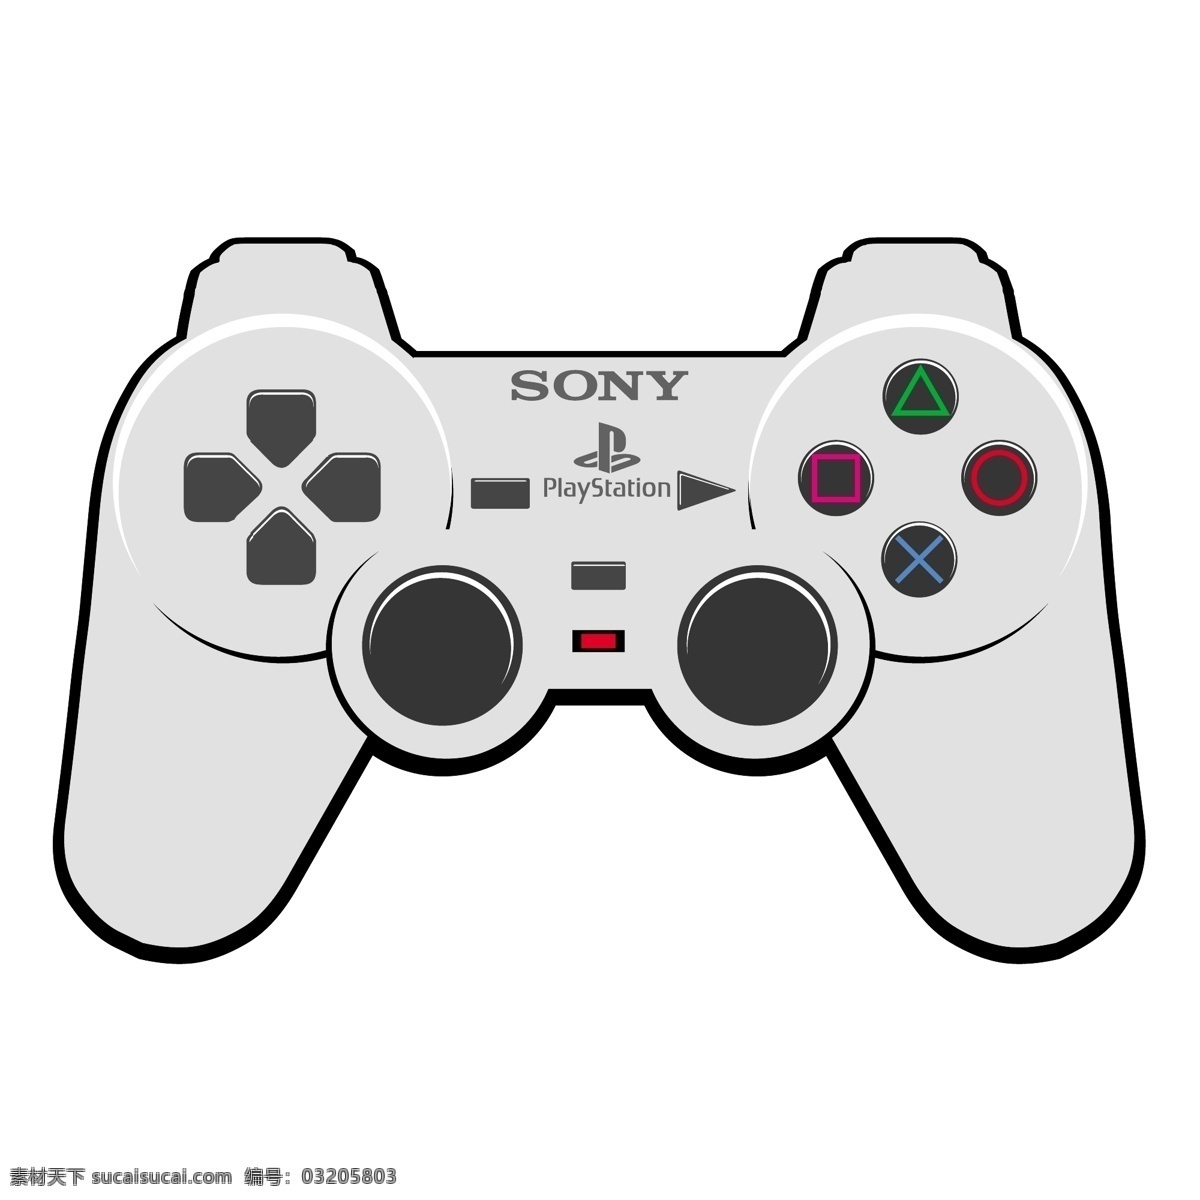 索尼 playstation 垫 免费 标志 标识 psd源文件 logo设计